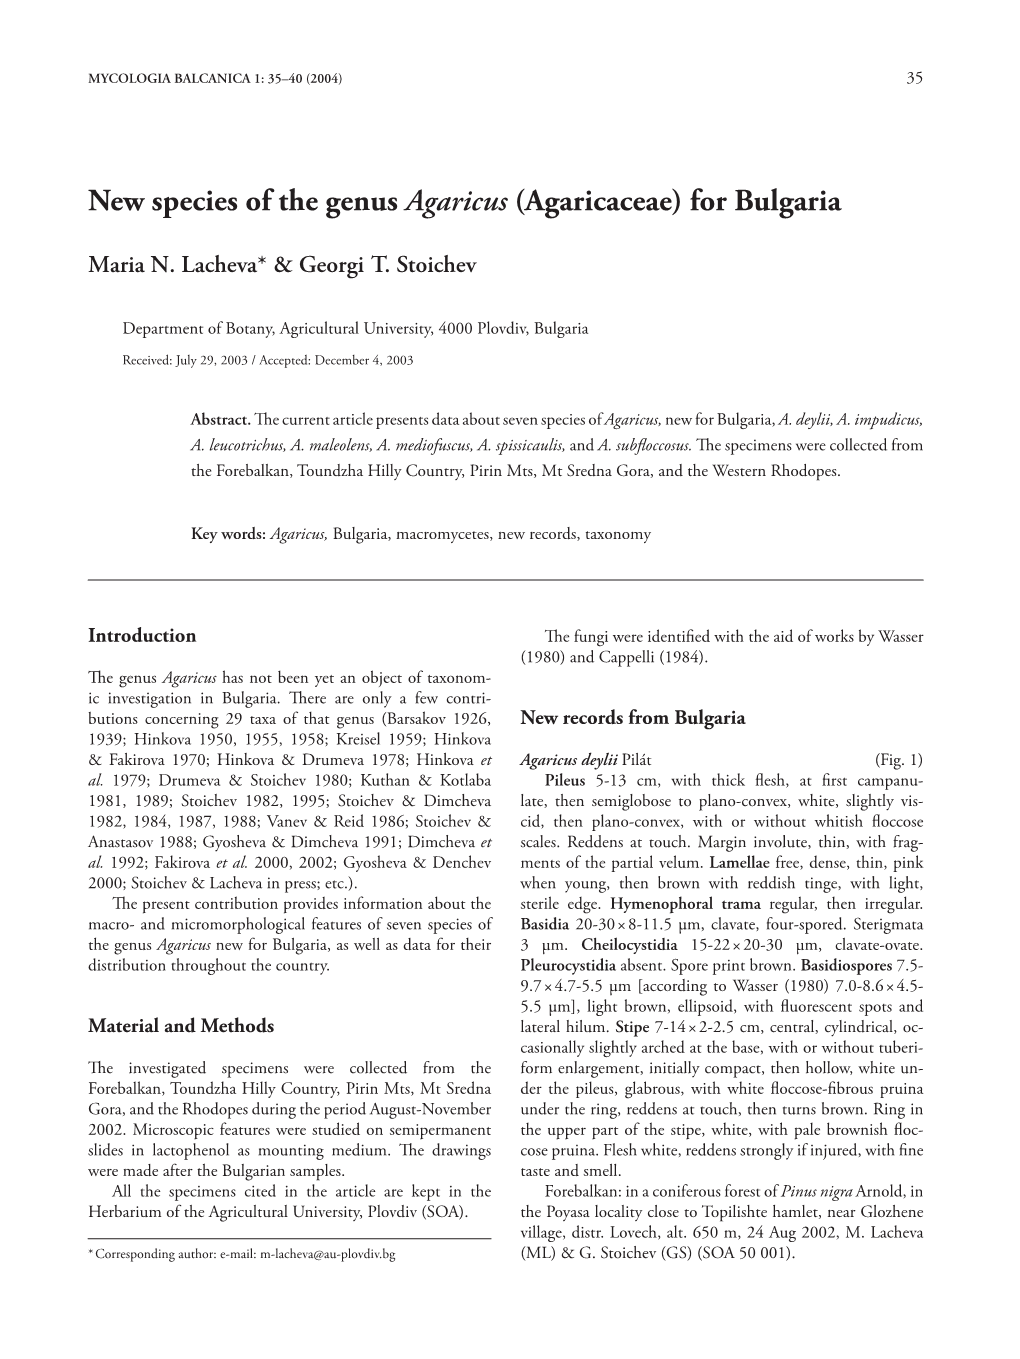 New Species of the Genus Agaricus (Agaricaceae) for Bulgaria